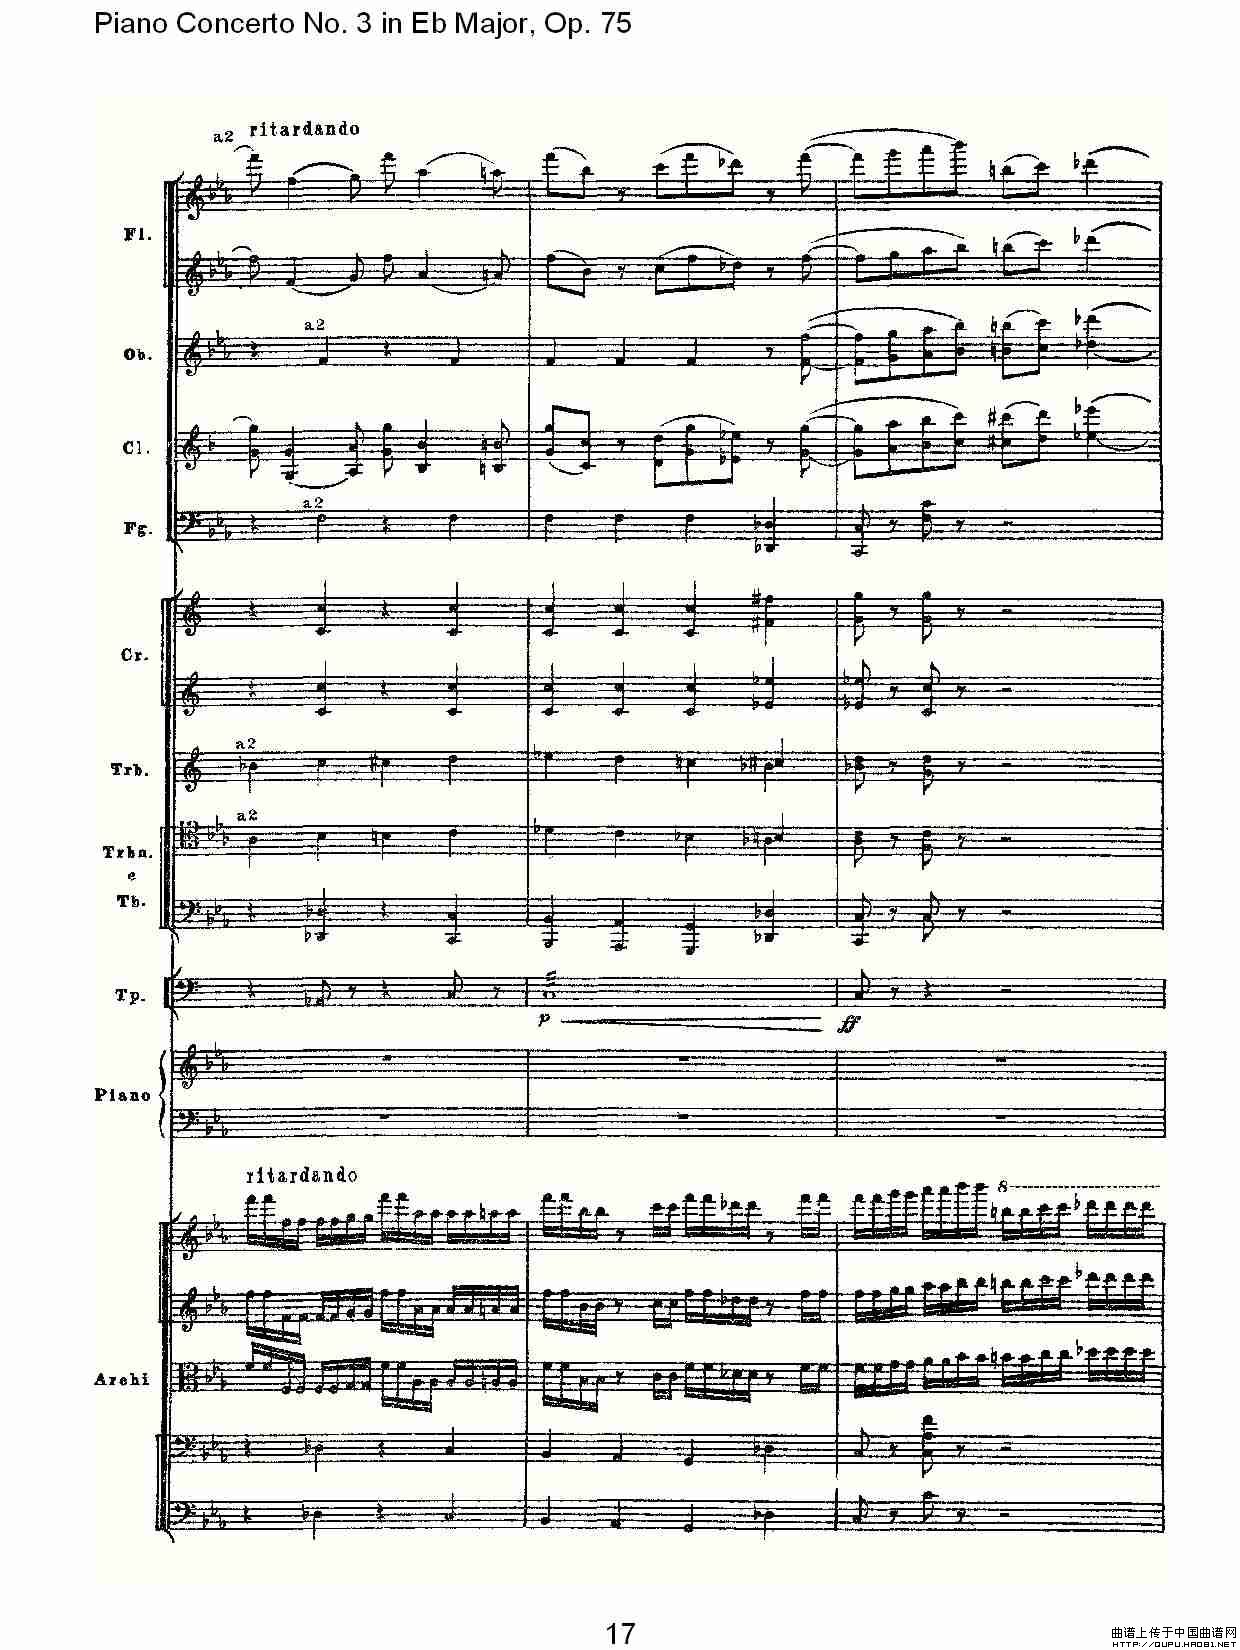 Piano Concerto No.3 in Eb Major, Op.75（Eb大调第三钢琴协奏）(1)_原文件名：Piano Concerto No.3 in Eb Major, Op.7517.jpg